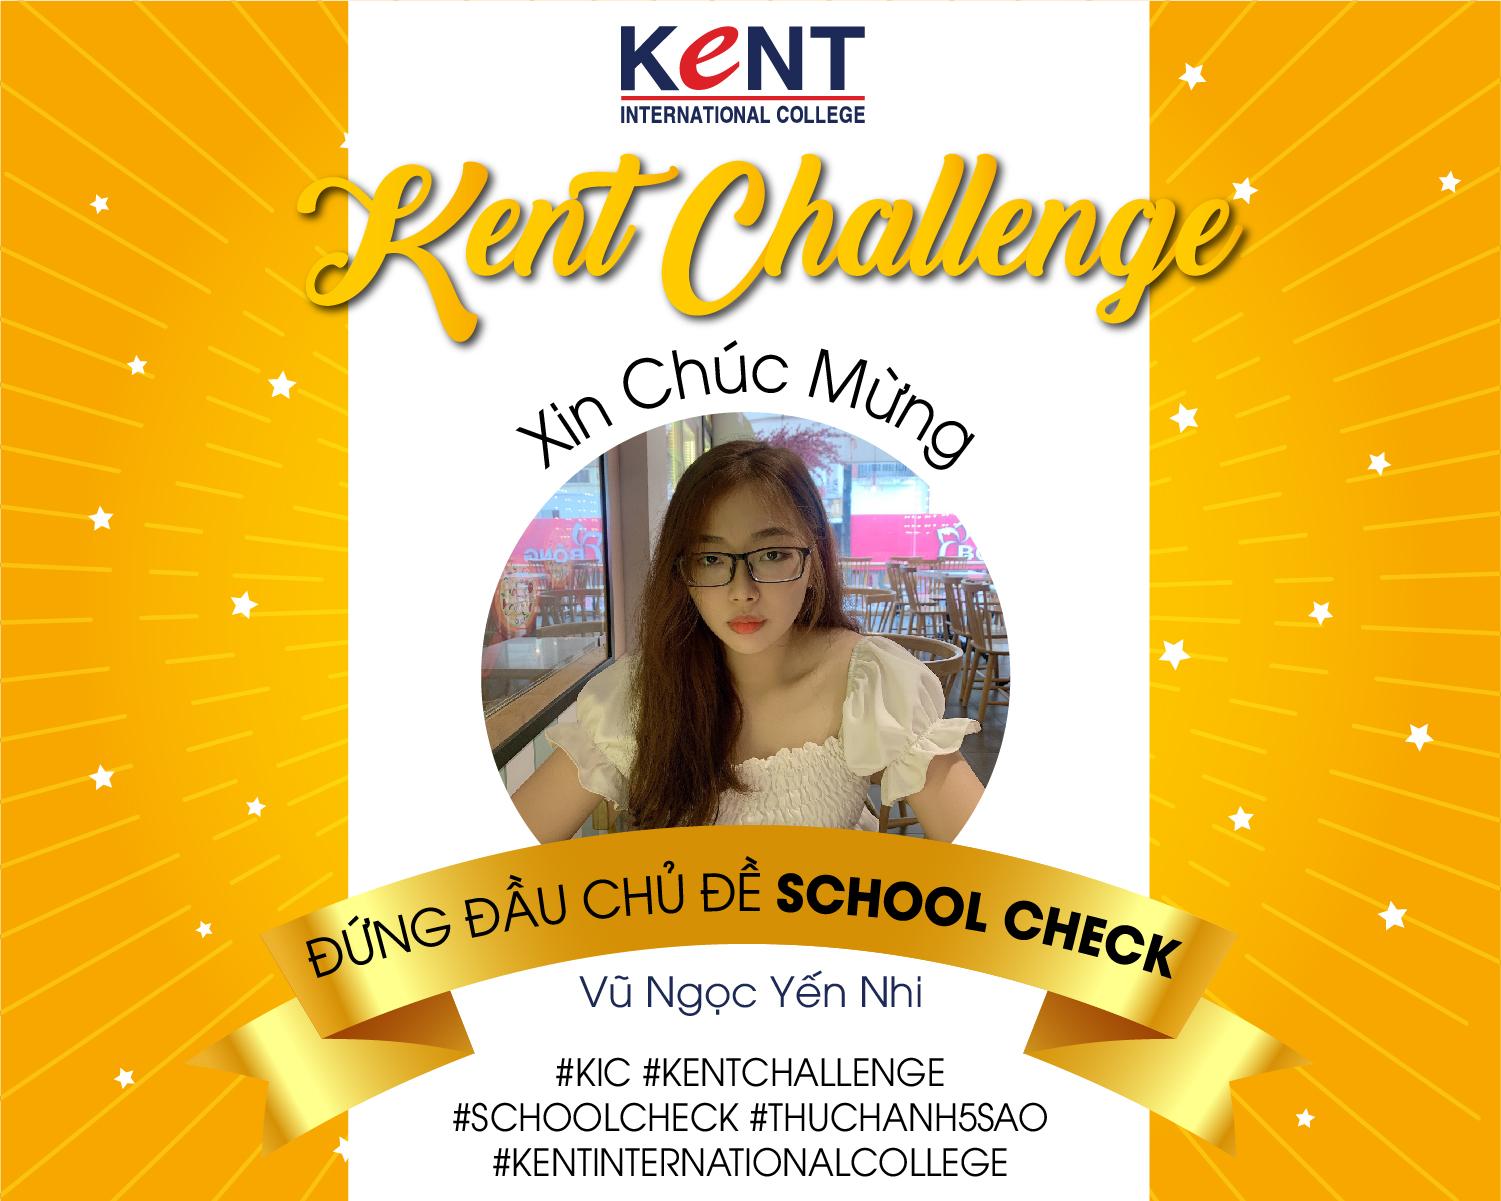 Lộ diện gương mặt chinh phục chủ đề 2 “School Check” trong cuộc thi TikTok – Kent Challenge